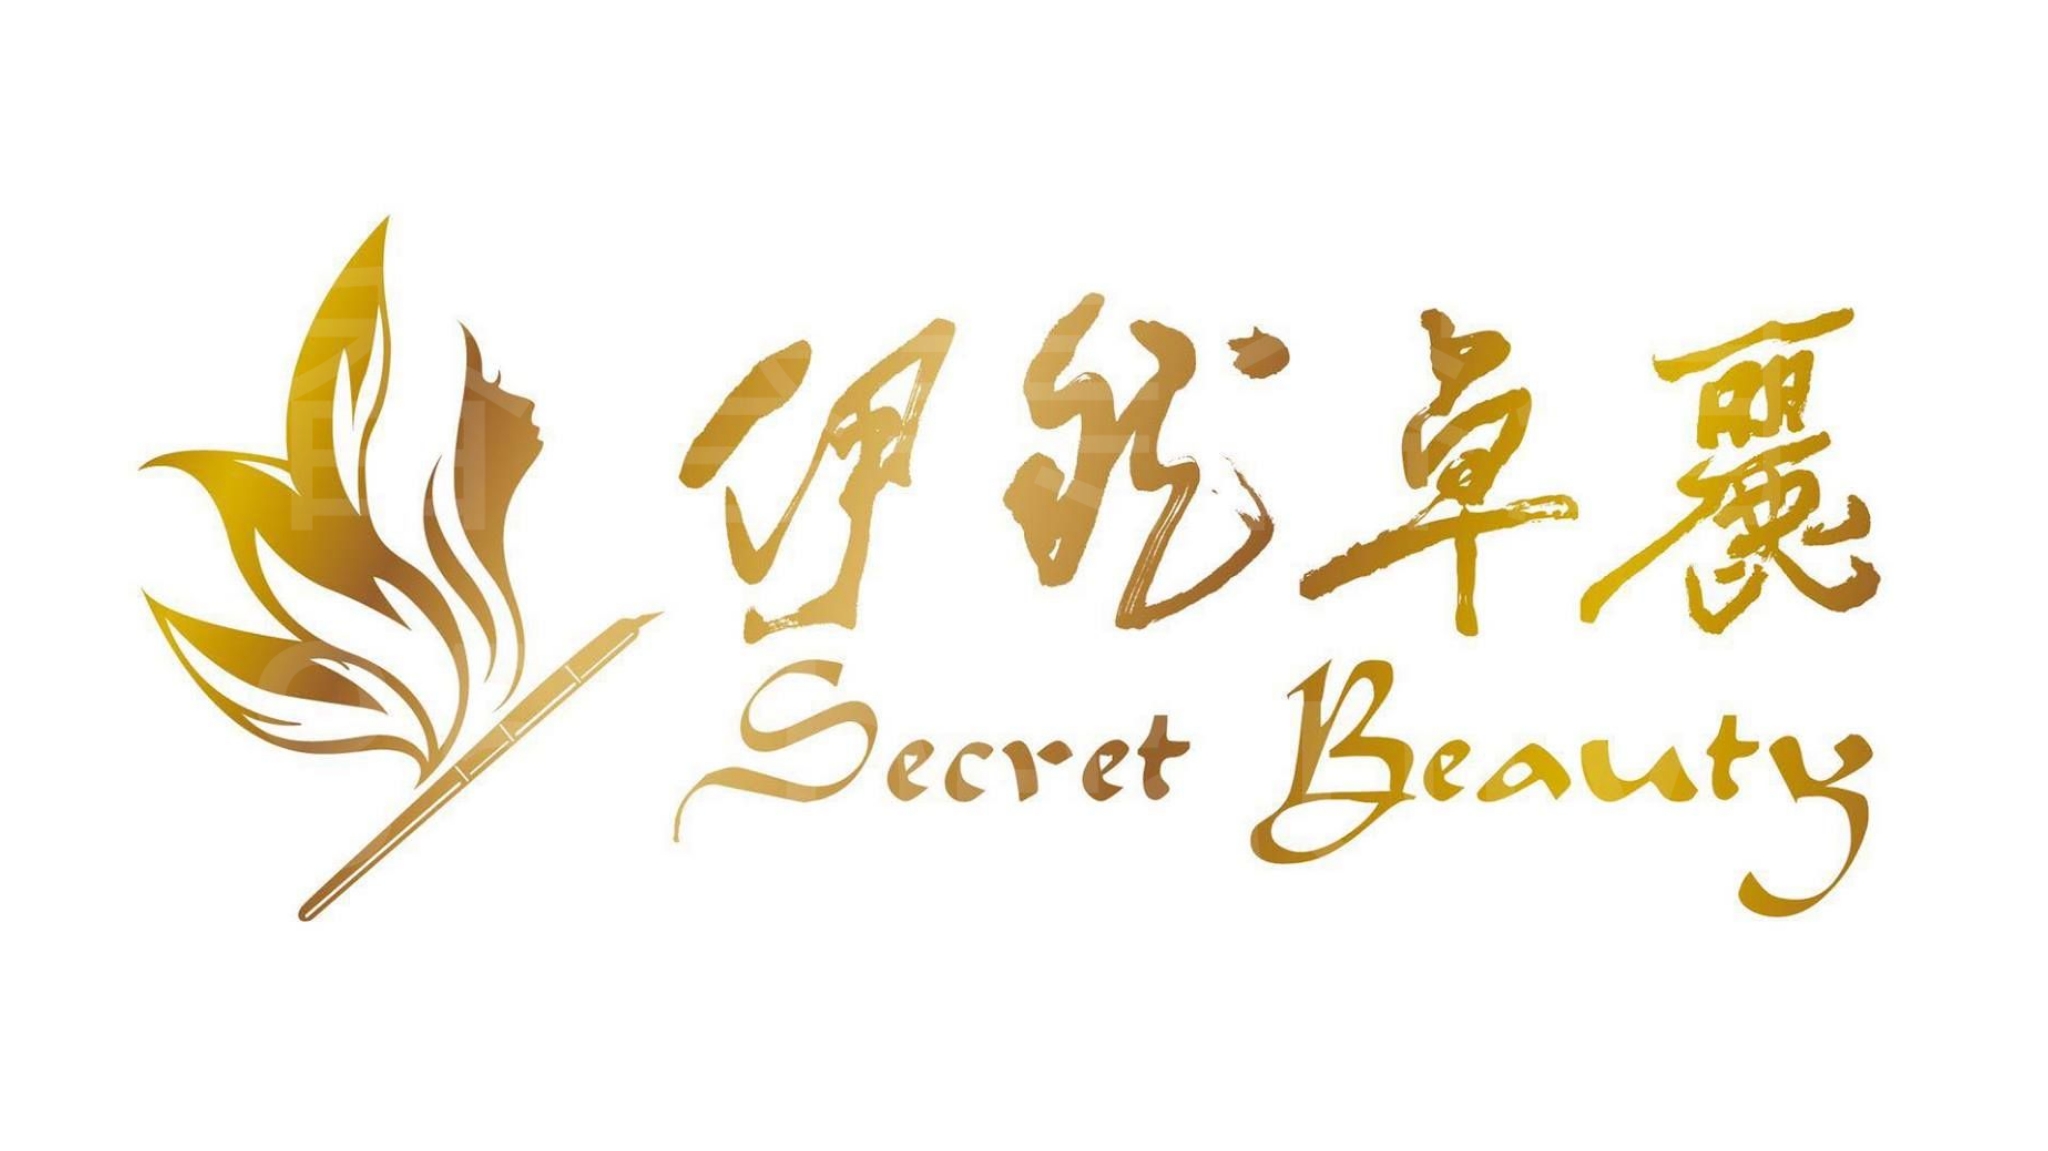 香港美容網 Hong Kong Beauty Salon 美容院 / 美容師: Secert Spa Beauty伊然卓麗